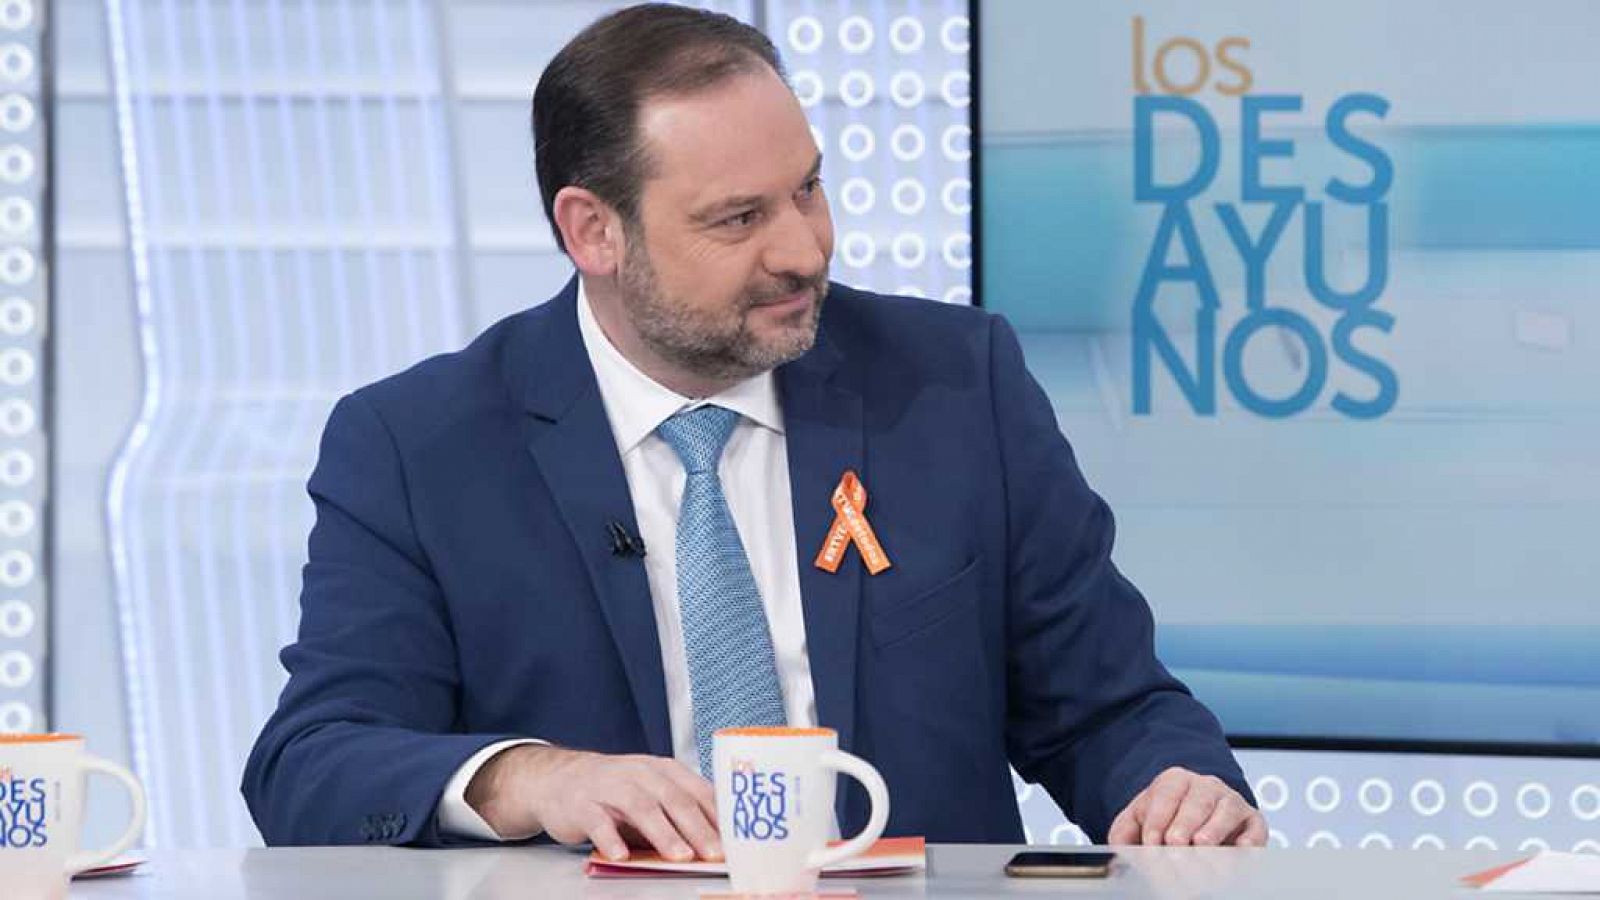 Los desayunos de TVE - José Luis Ábalos, secretario de organización del PSOE